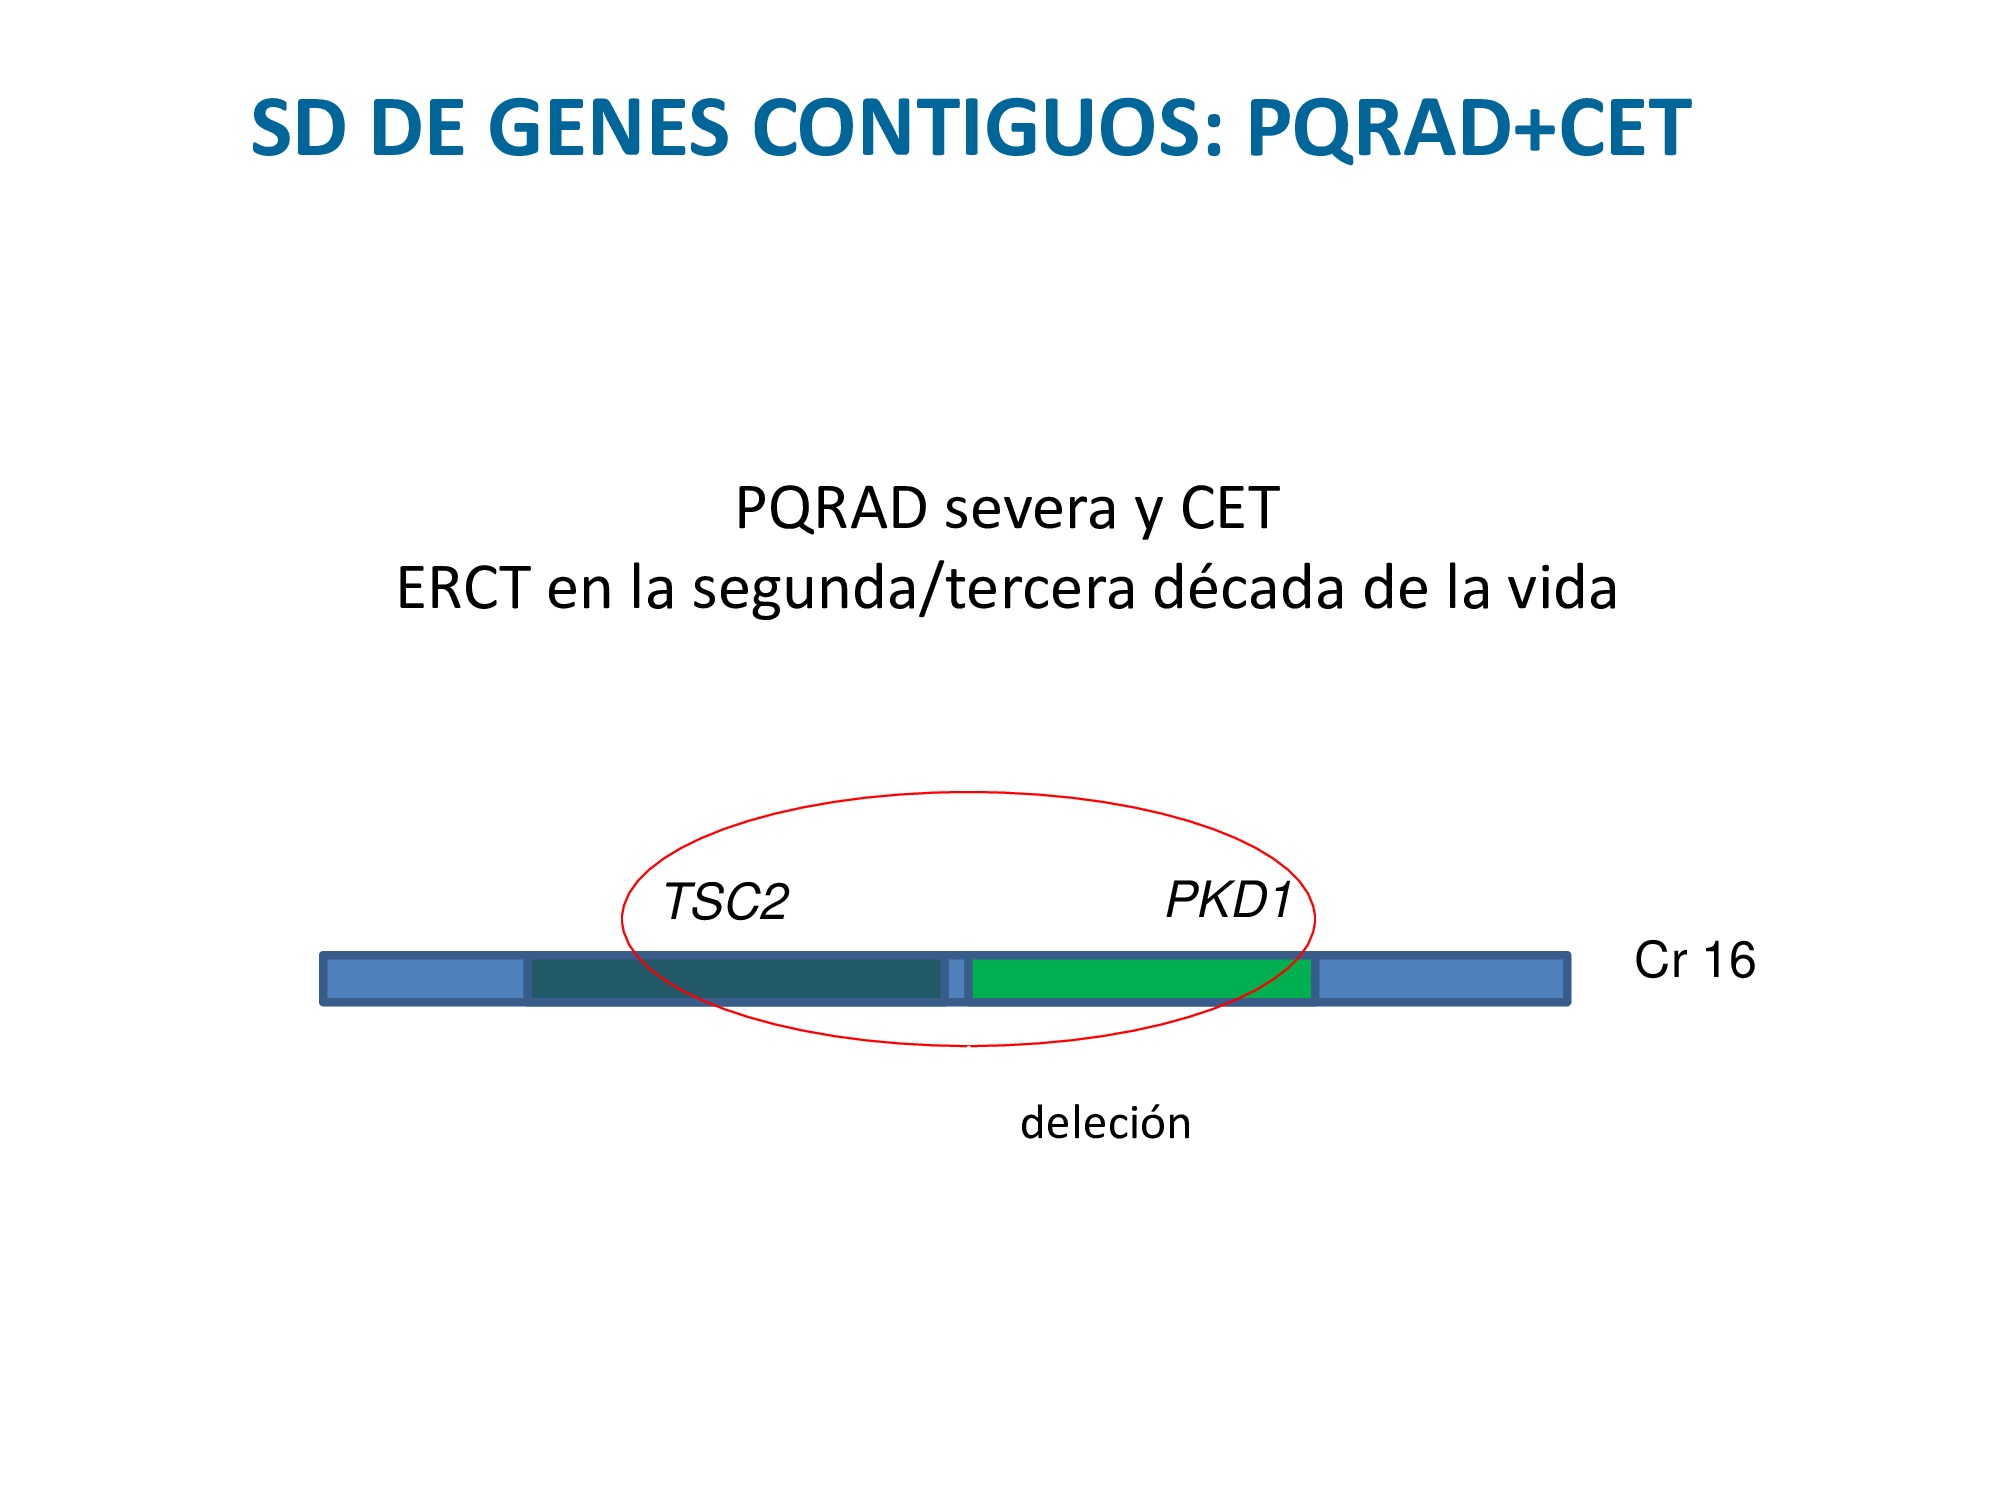 Deleción (pérdida de material genético) que afecta la gen TSC2 y PKD1. Tiene un CET grave y una PQRAD más grave de lo habitual.